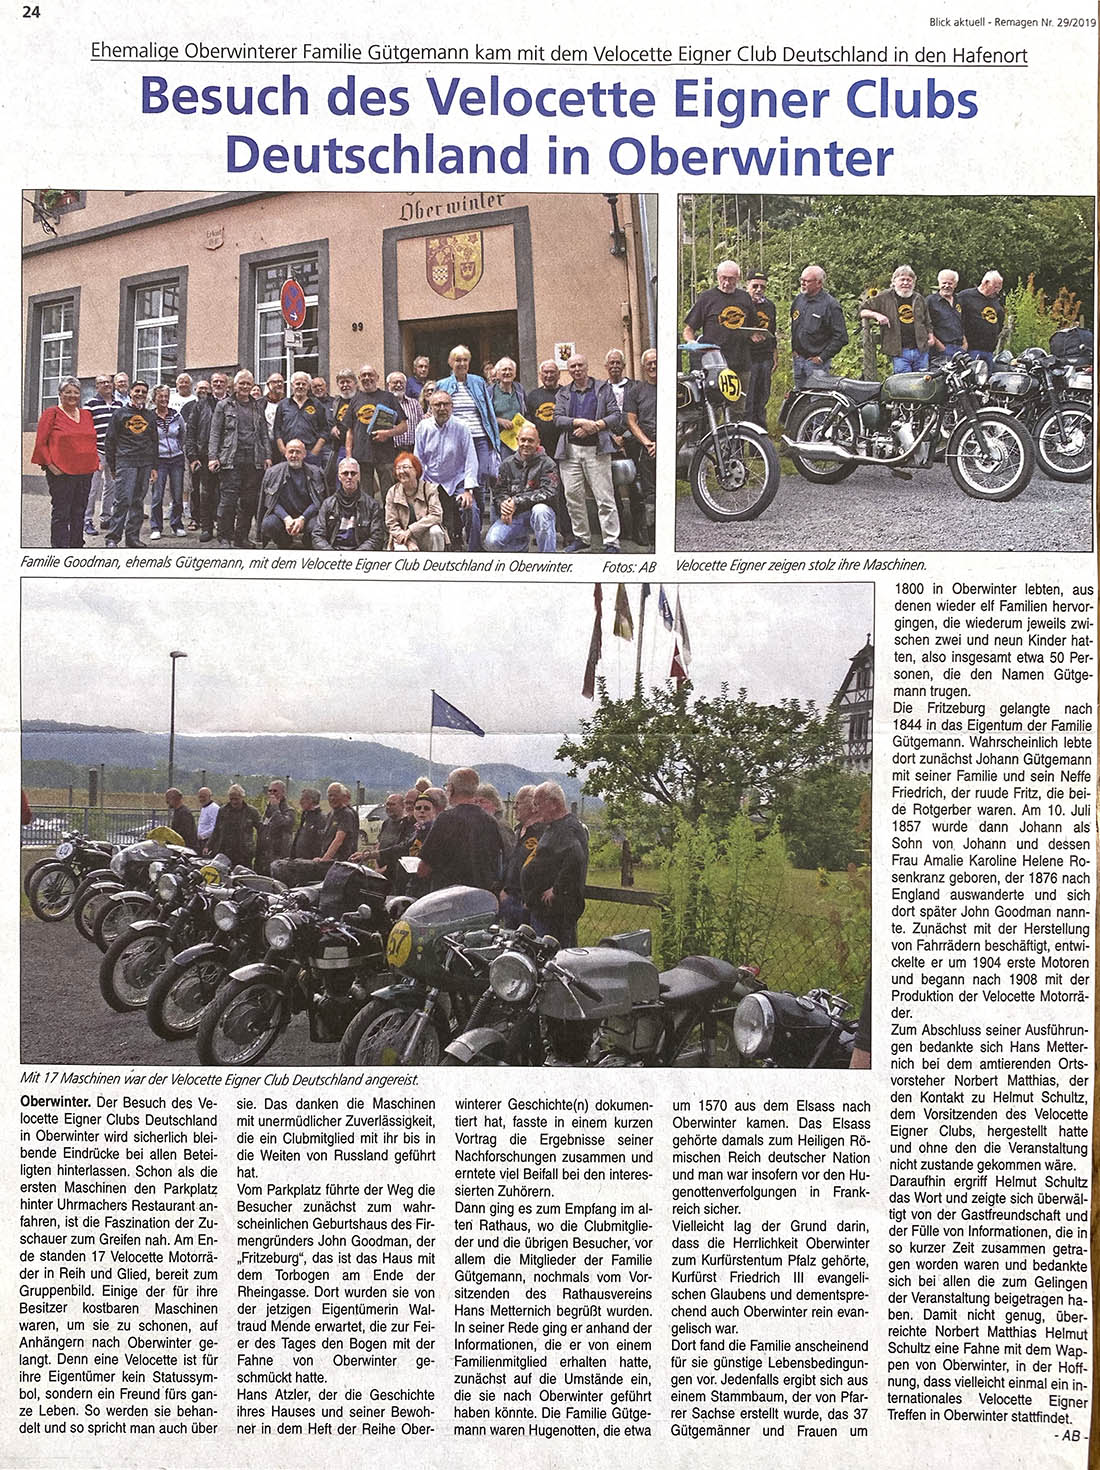 Besuch des Velocette Eigner Clubs Deutschland in Oberwinter